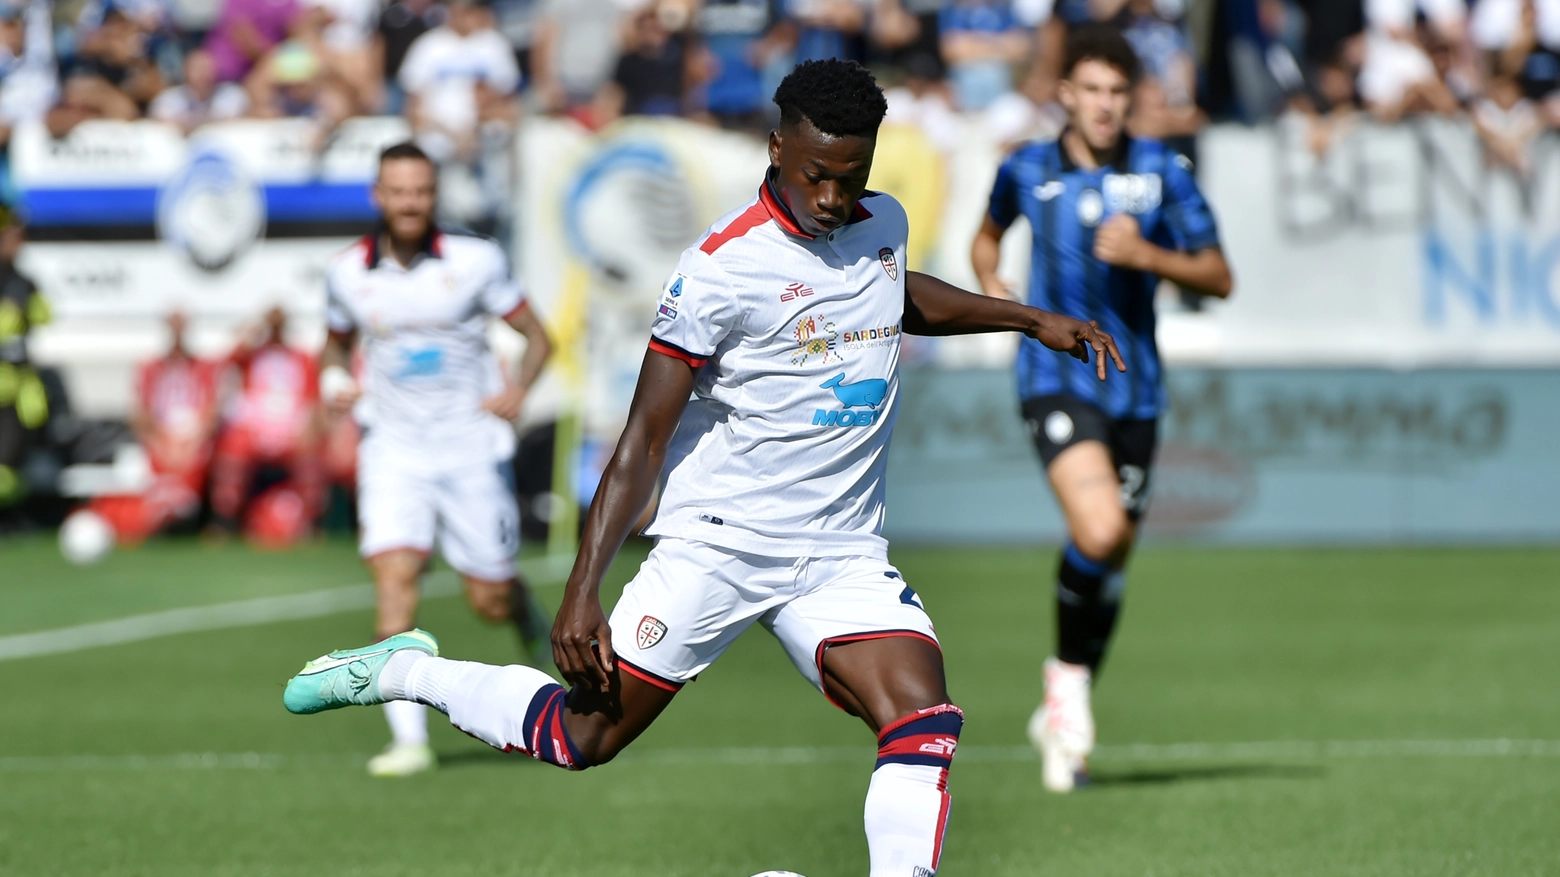 Il 21enne centrocampista ghanese aveva giocato nelle giovanili nerazzurre fino al 2021, poi il trasferimento a Verona e infine al Cagliari